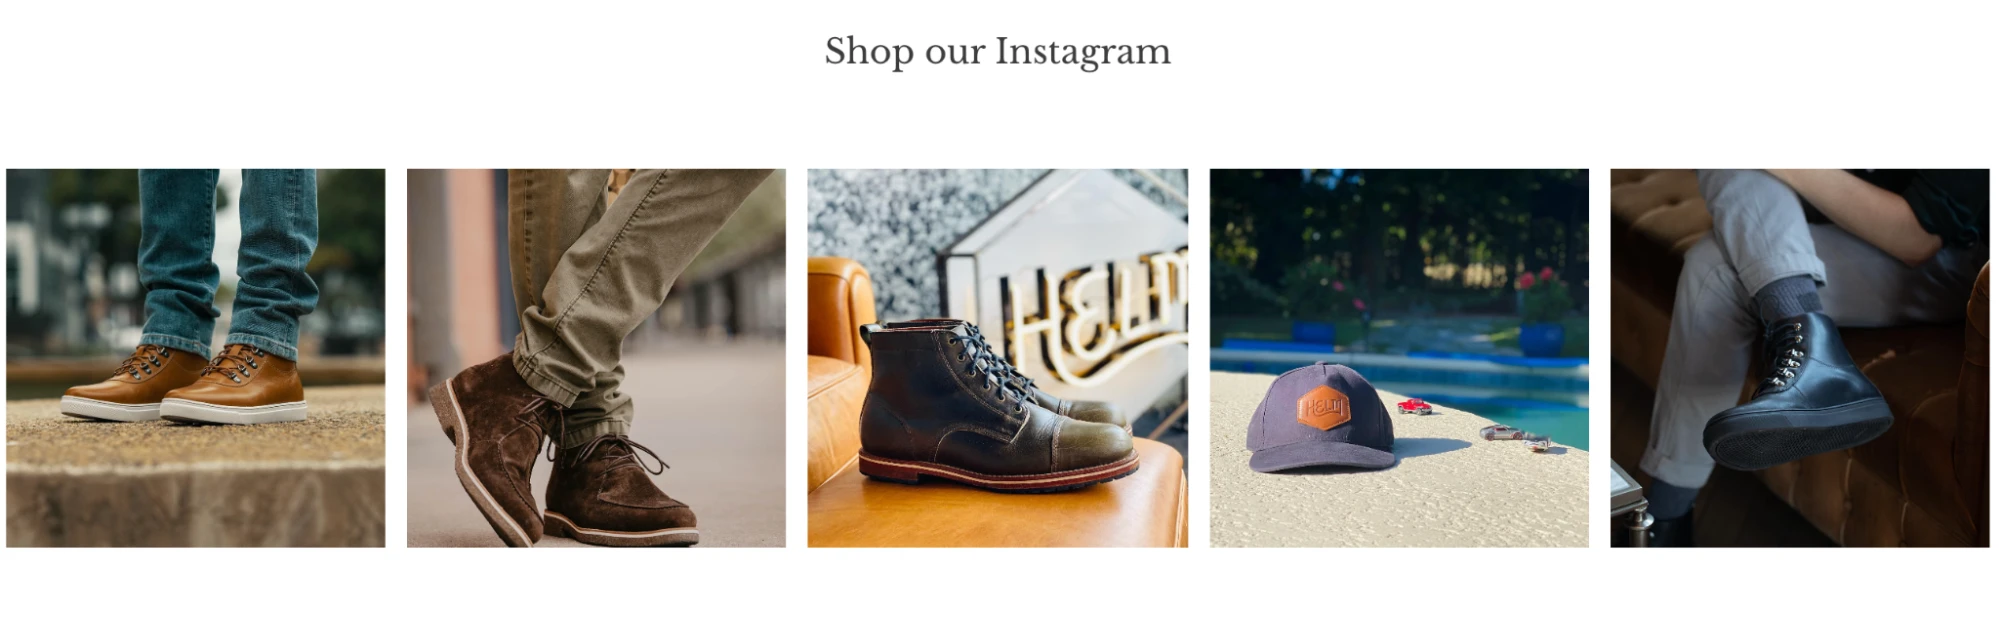 商店也可以选择直接在其网站上嵌入 Instagram 照片墙